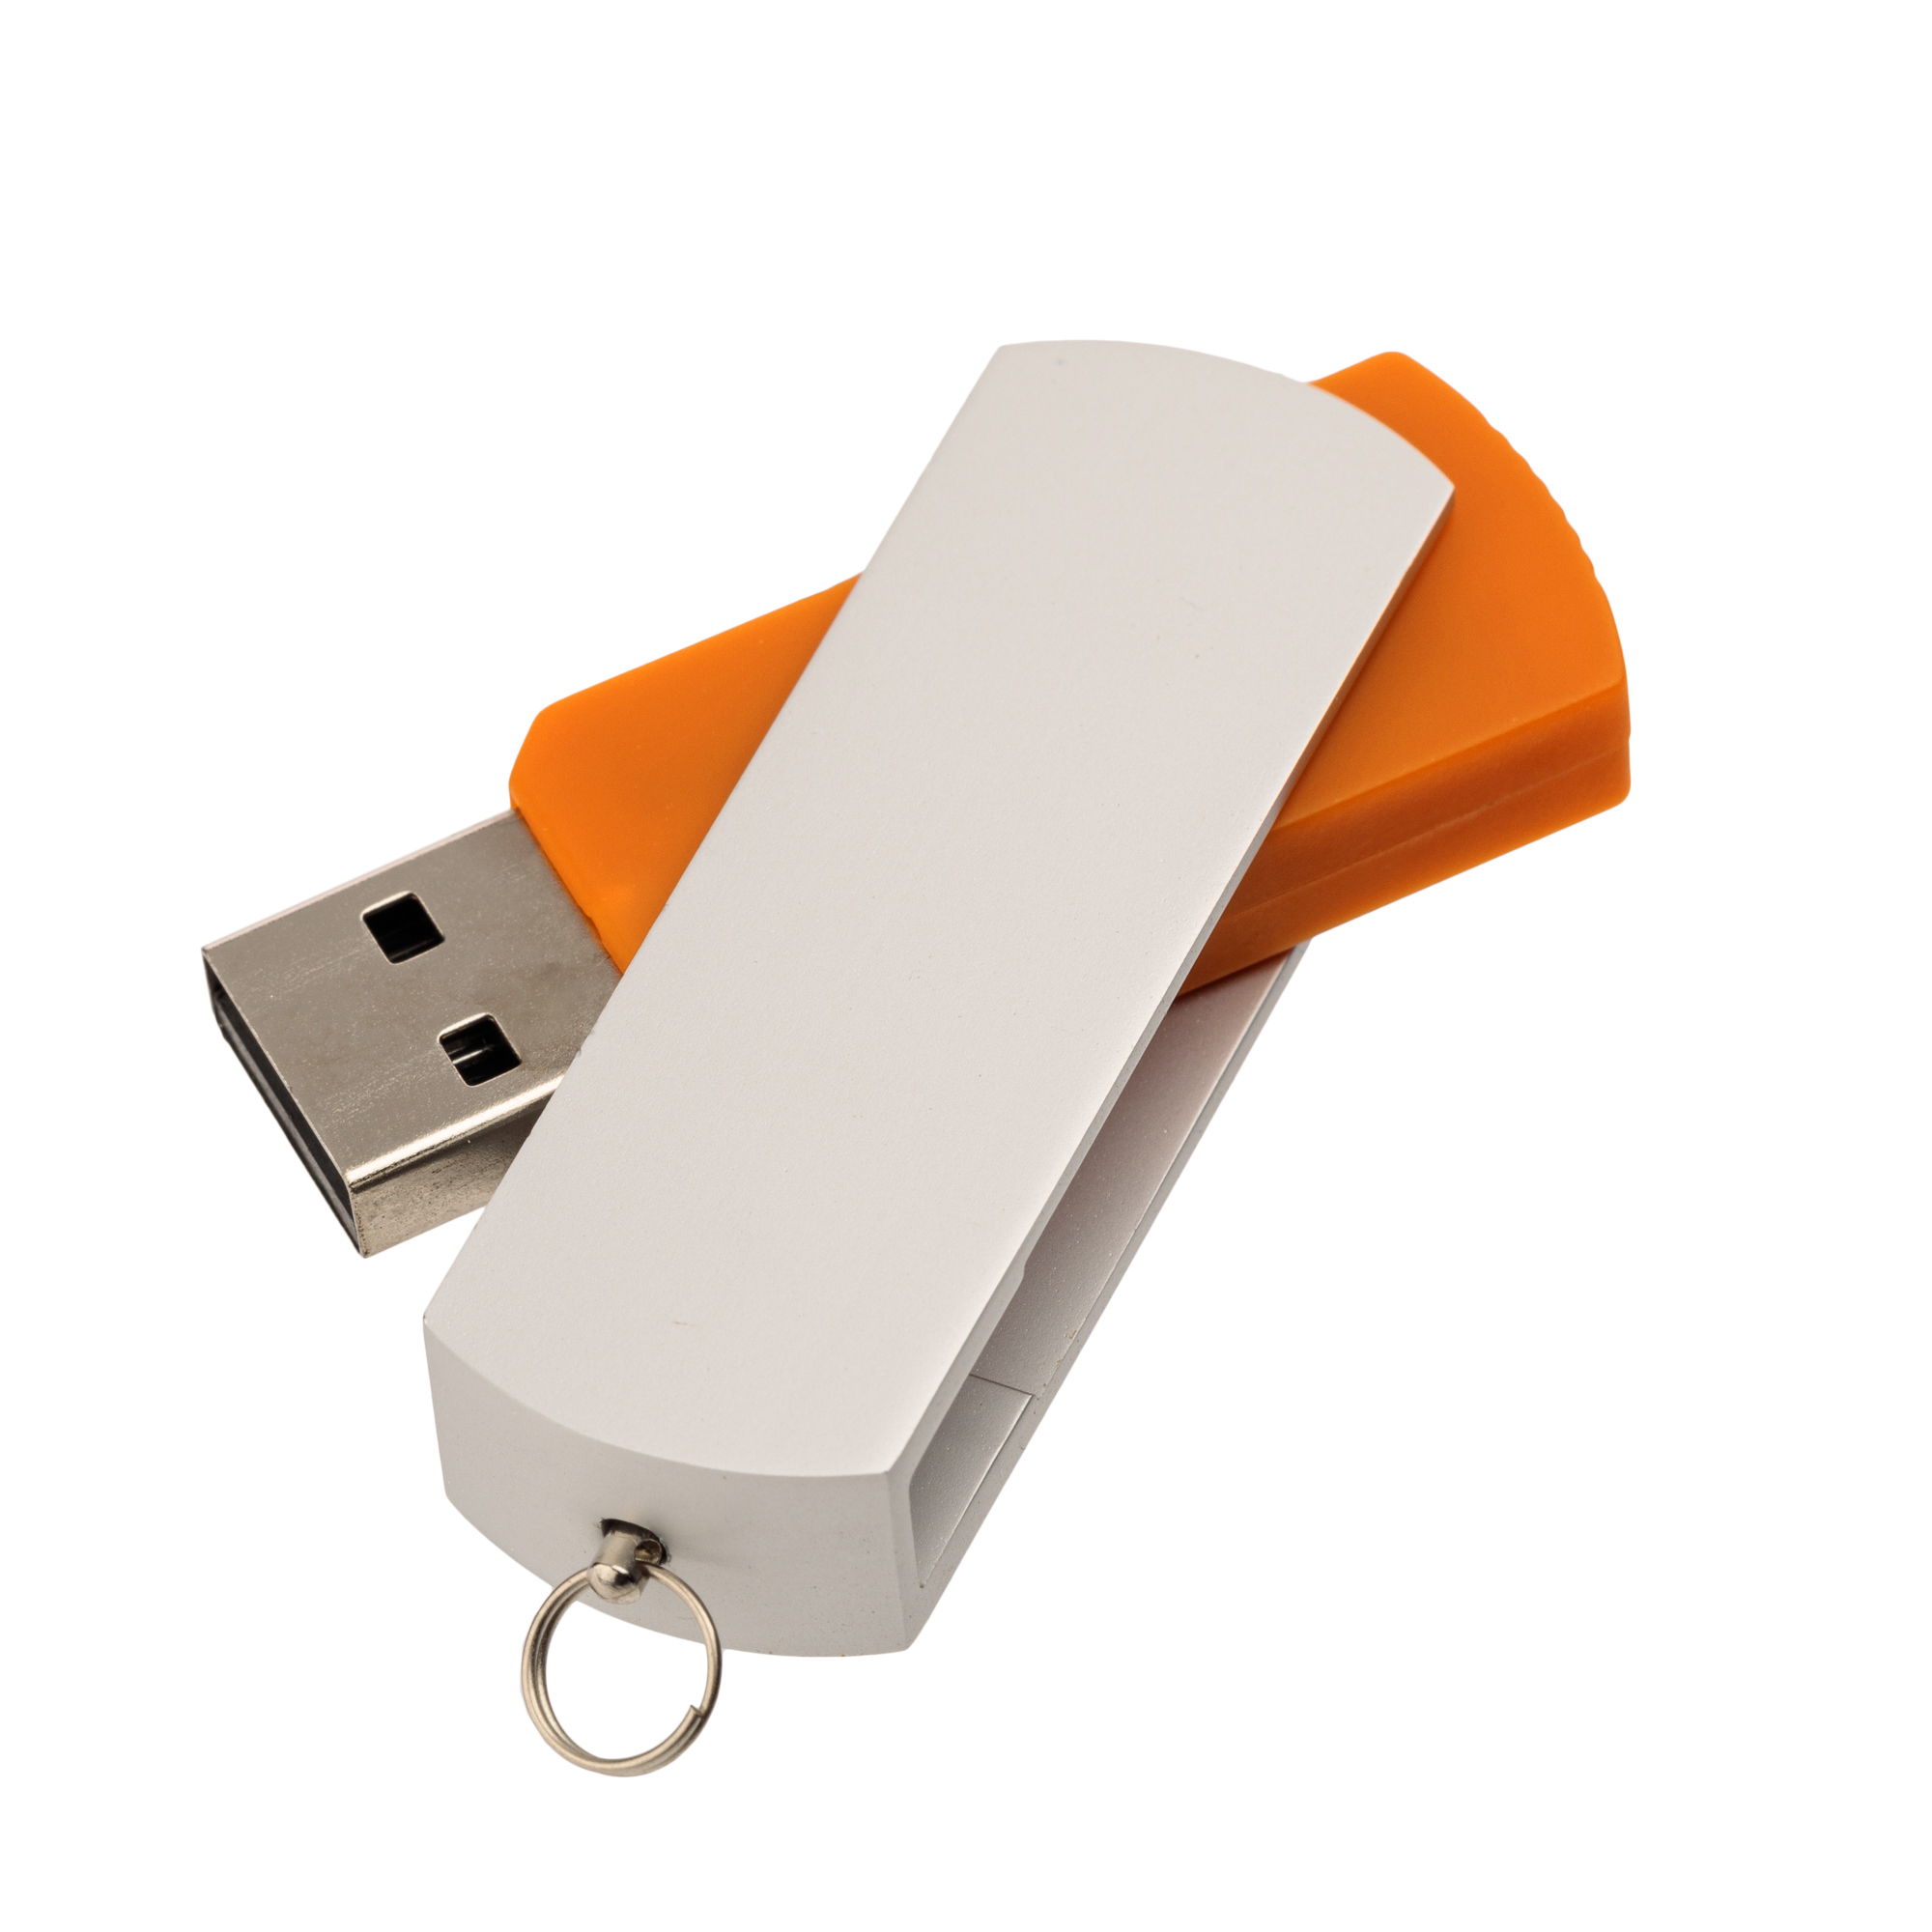 USB-флешка модель 107 (2.0), объем памяти 32 GB, цвет оранжевый